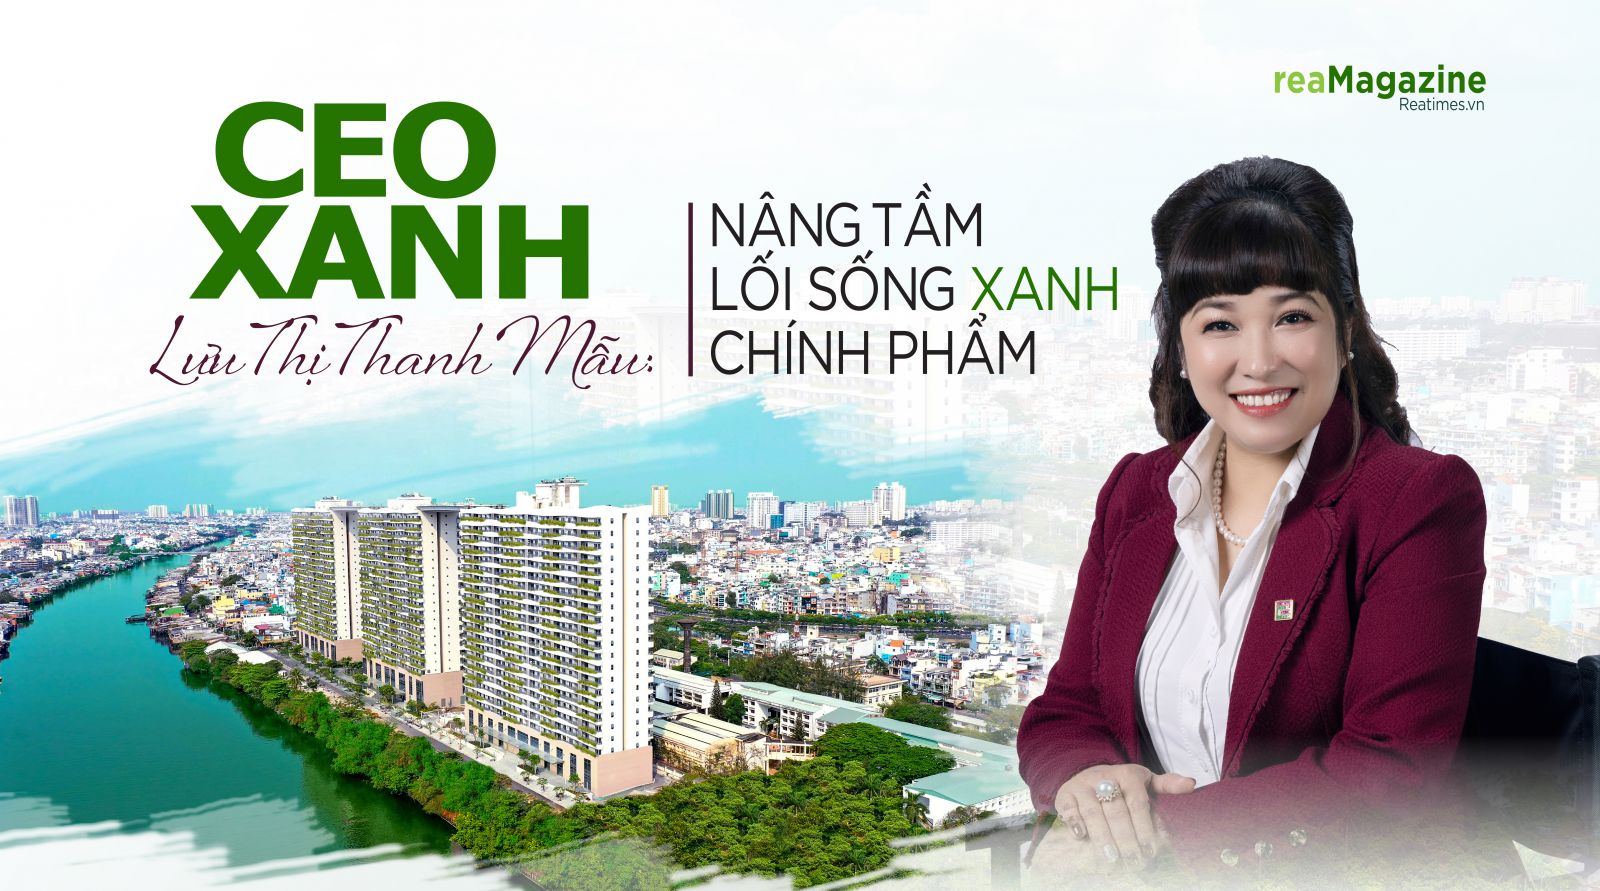 CEO xanh Lưu Thị Thanh Mẫu: Nâng tầm lối sống xanh chính phẩm